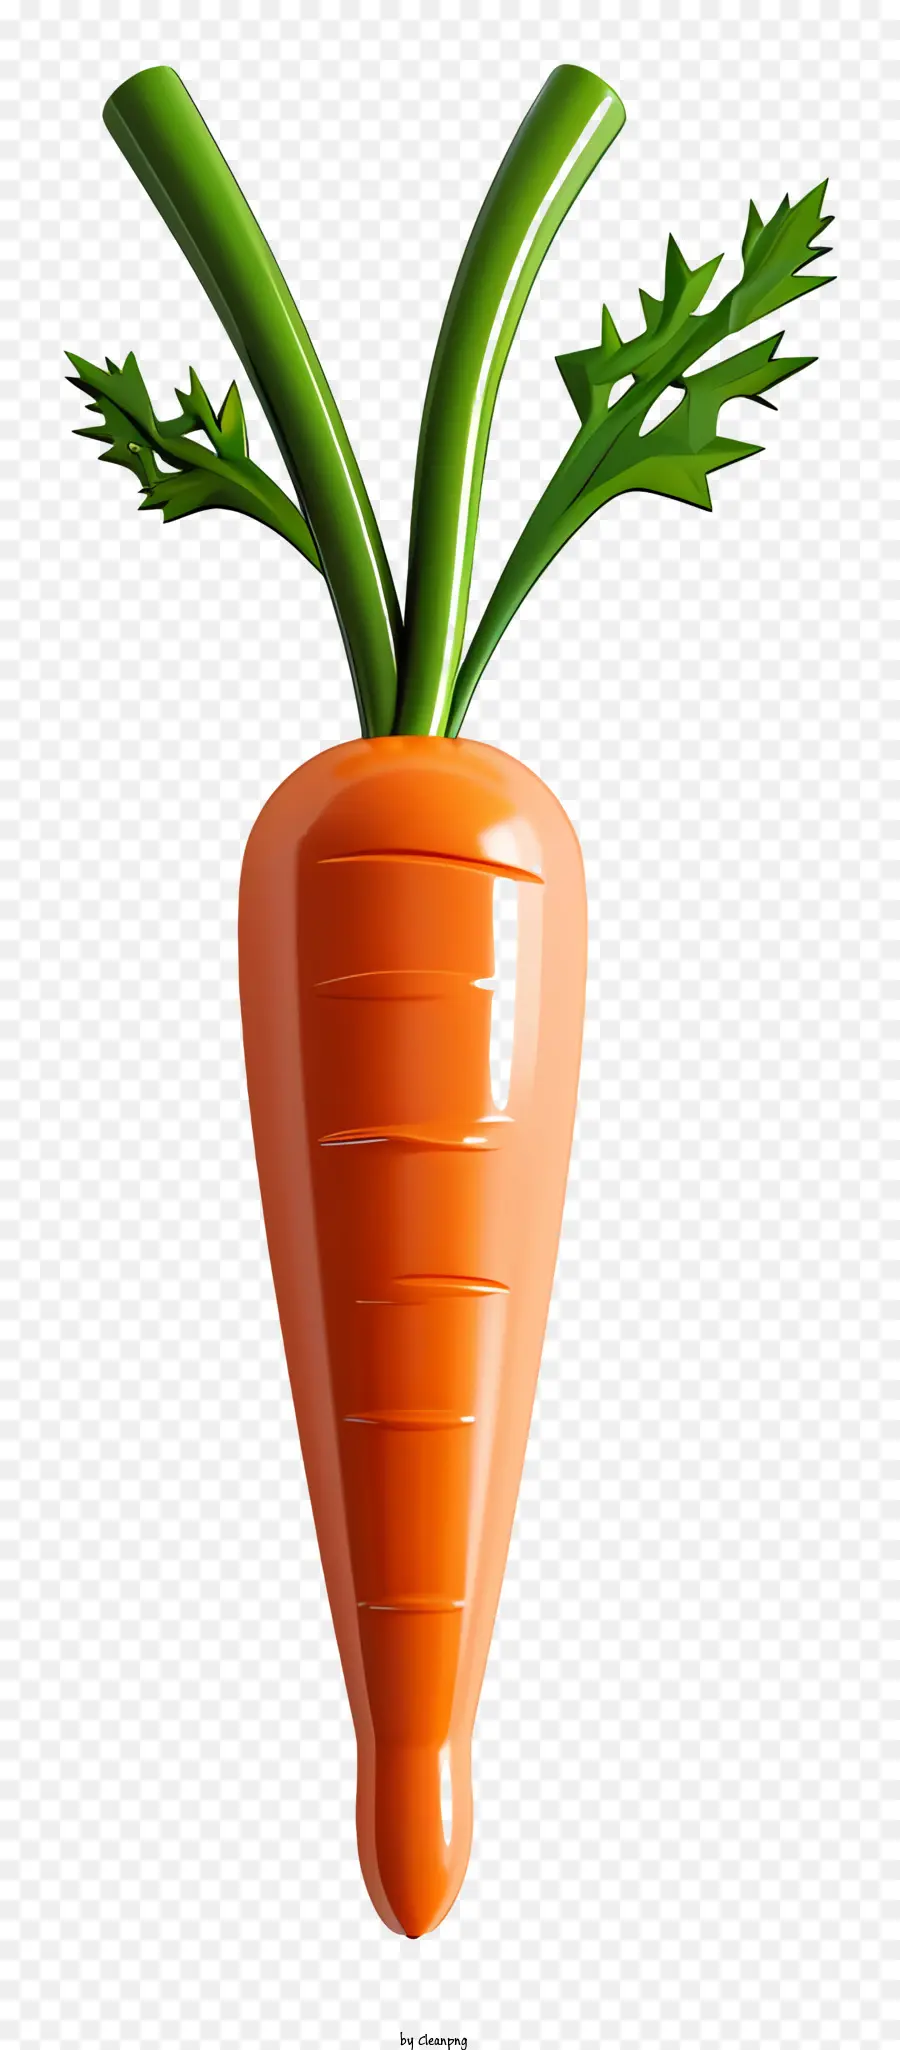 Foglie verdi vegetali di carota sfondo nero - Tagliare la carota con foglie verdi sopra